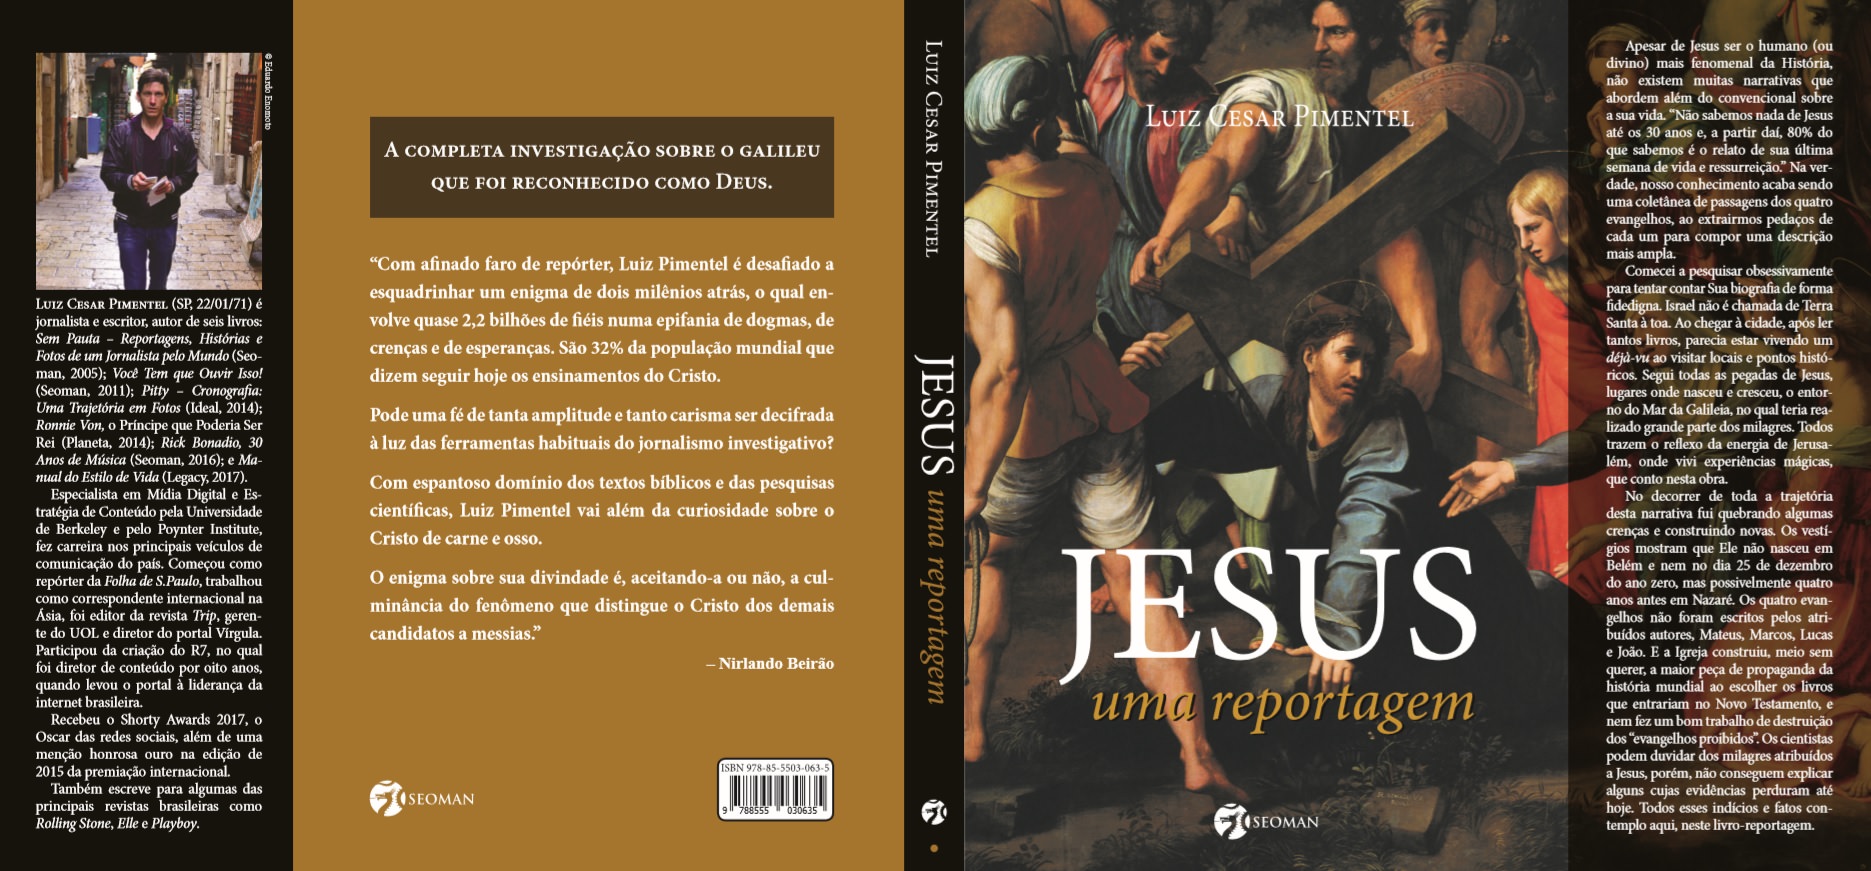 הספר "ישו, רפורטאז'ה "לואיס סזאר פימנטל, כיסוי. תמונות: בעיתונות העולמית MF.